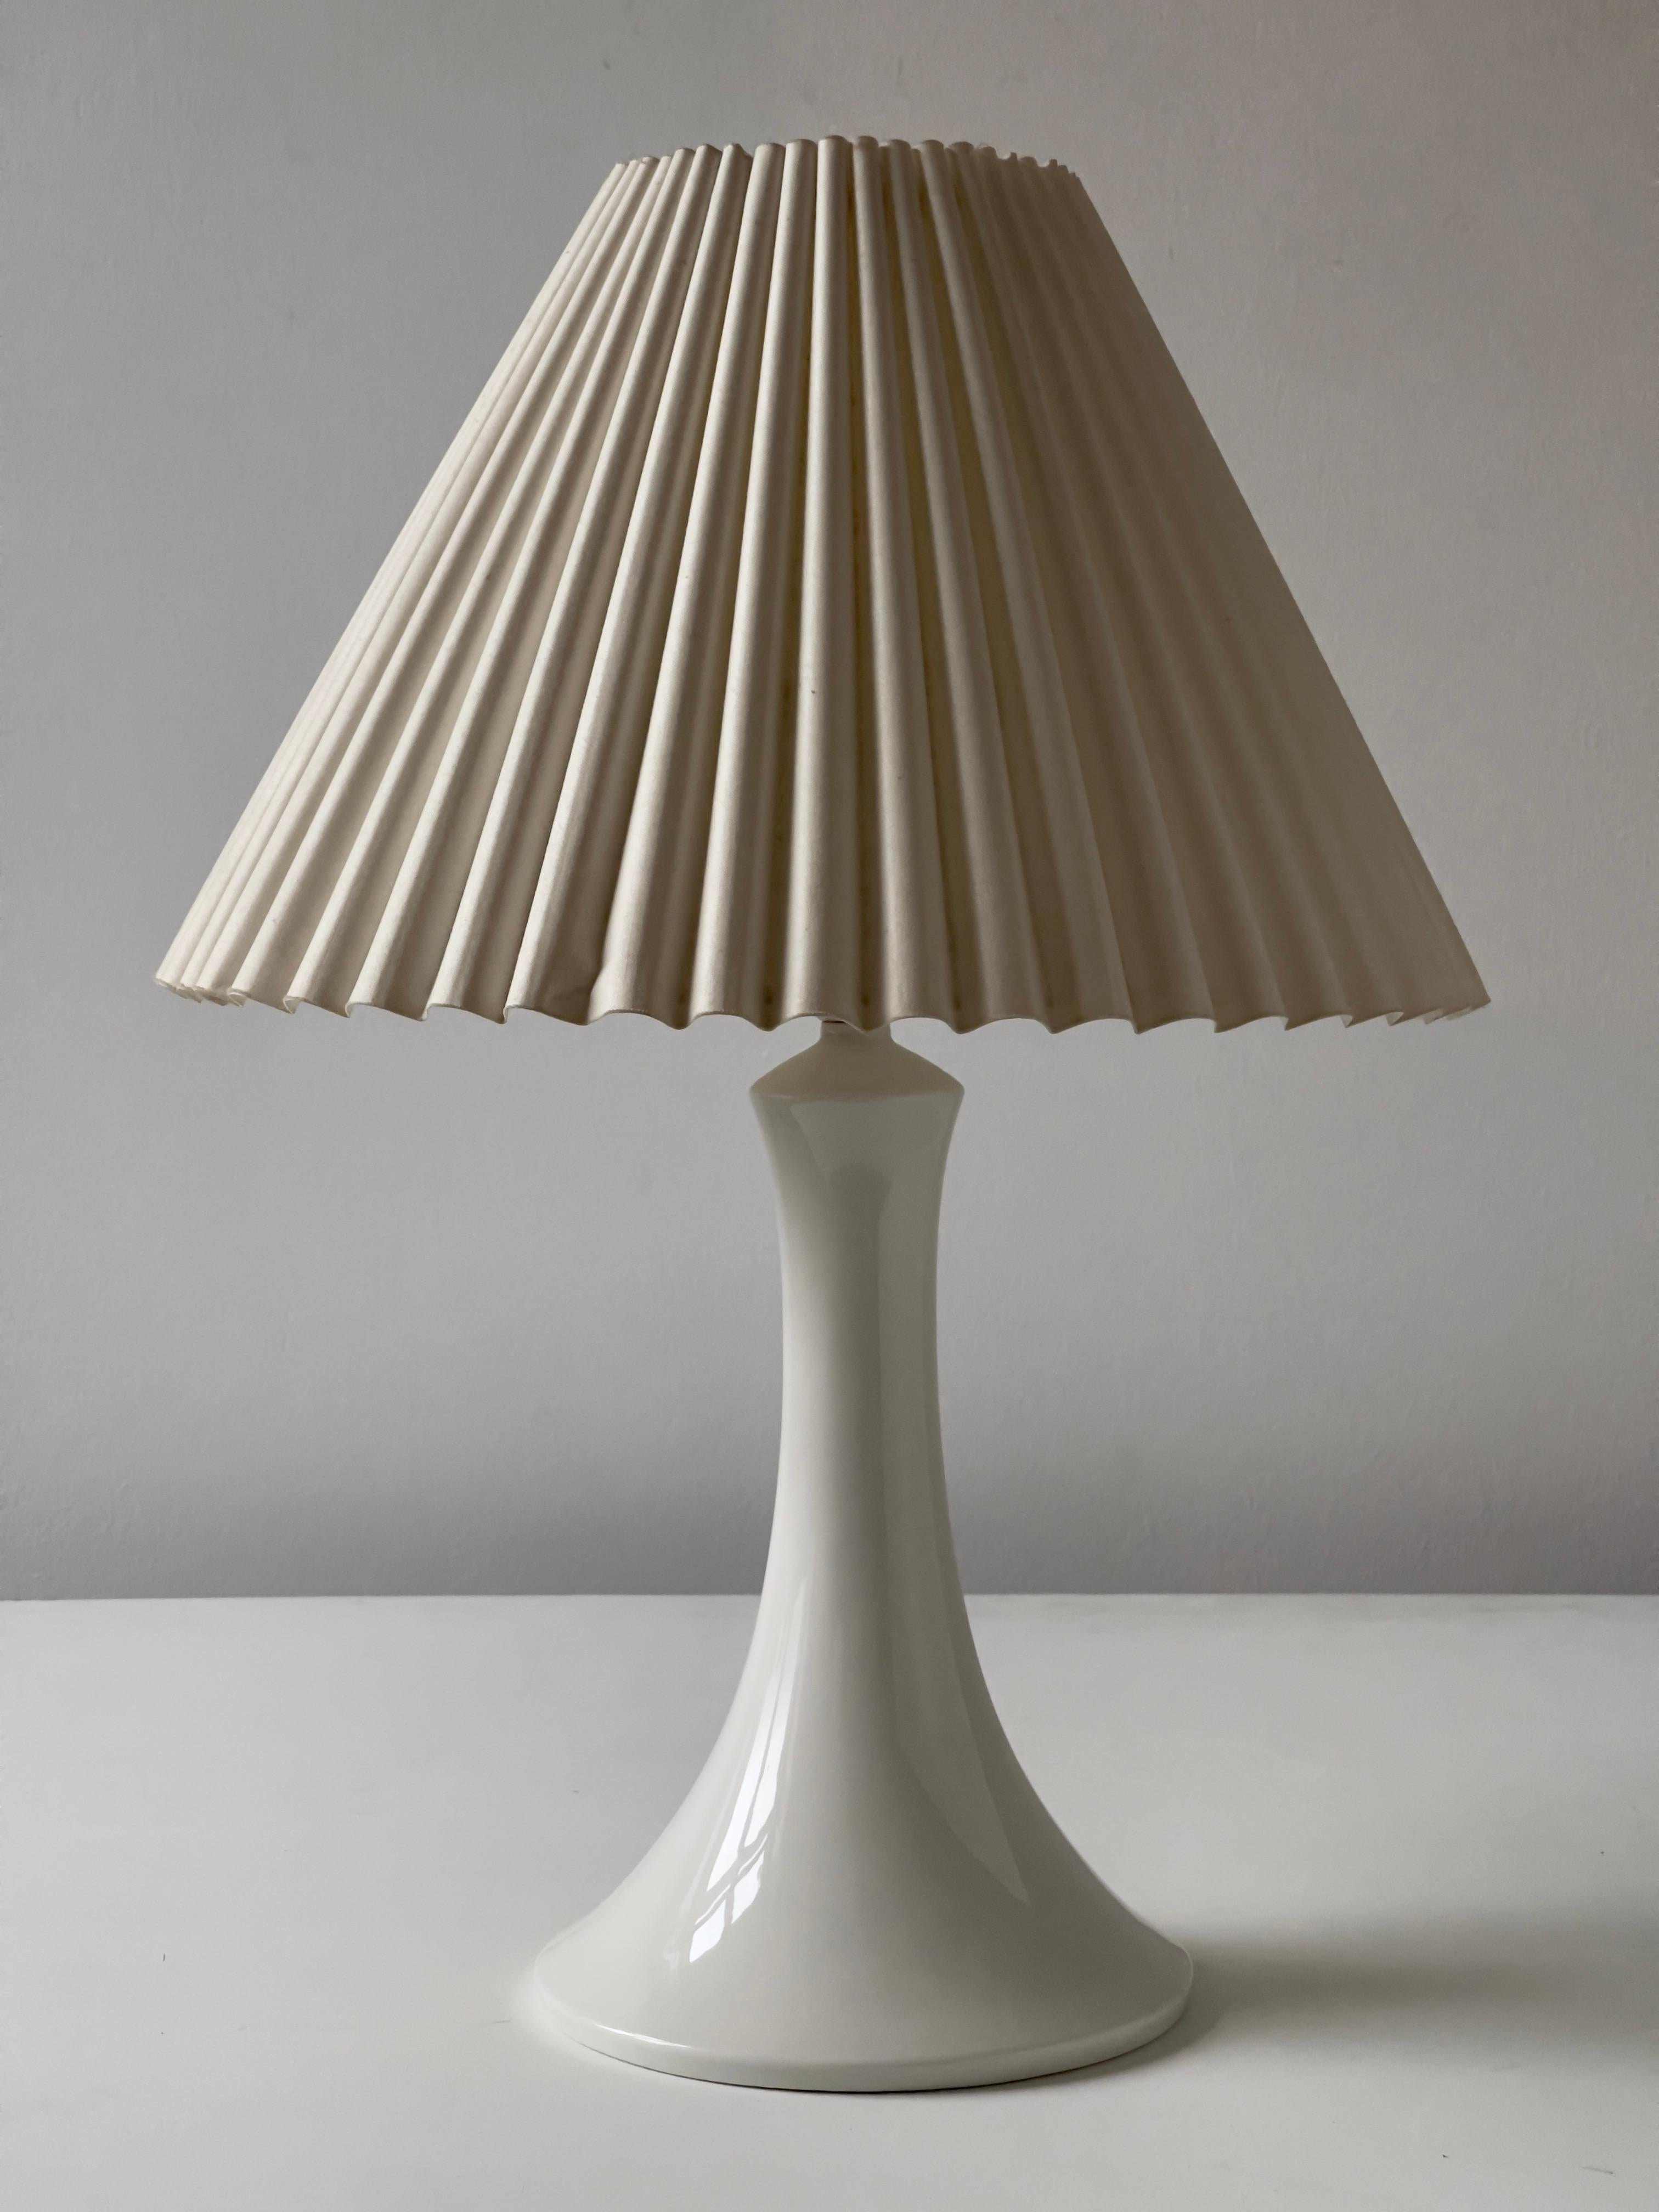 Hergestellt von Royal Copenhagen 1960s. Schöner Zustand und elegante weiße Oberfläche. Gestempelt. Die Höhe ist vom Boden bis zum Sockel. Verkauft ohne Lampenschirm.